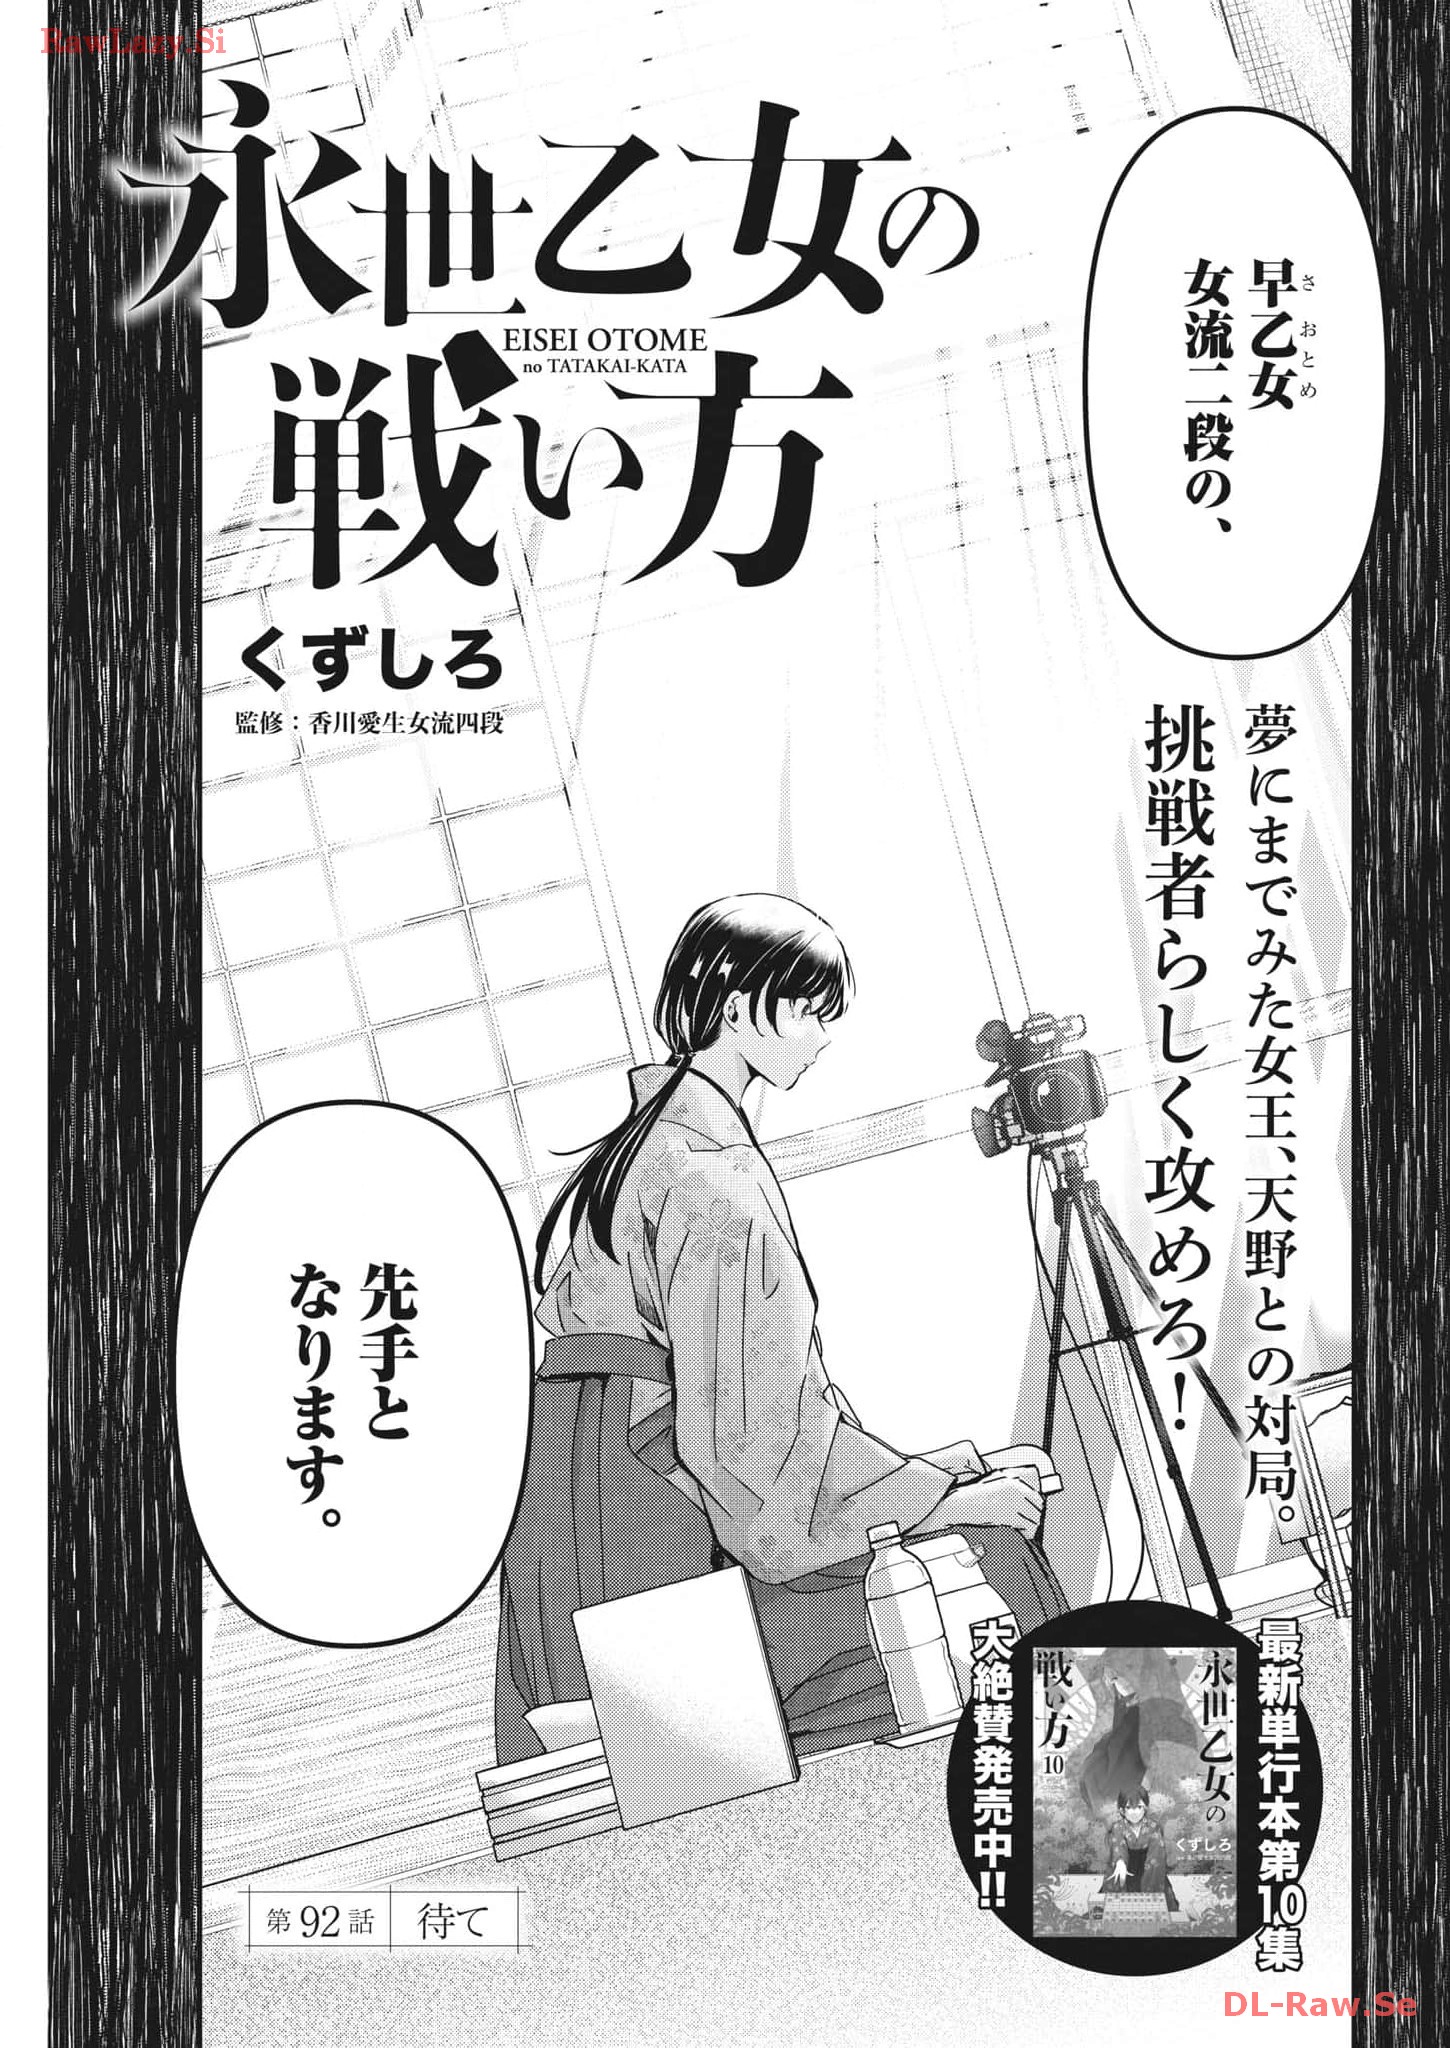 Eisei Otome no Tatakai-kata - Chapter 92 - Page 1